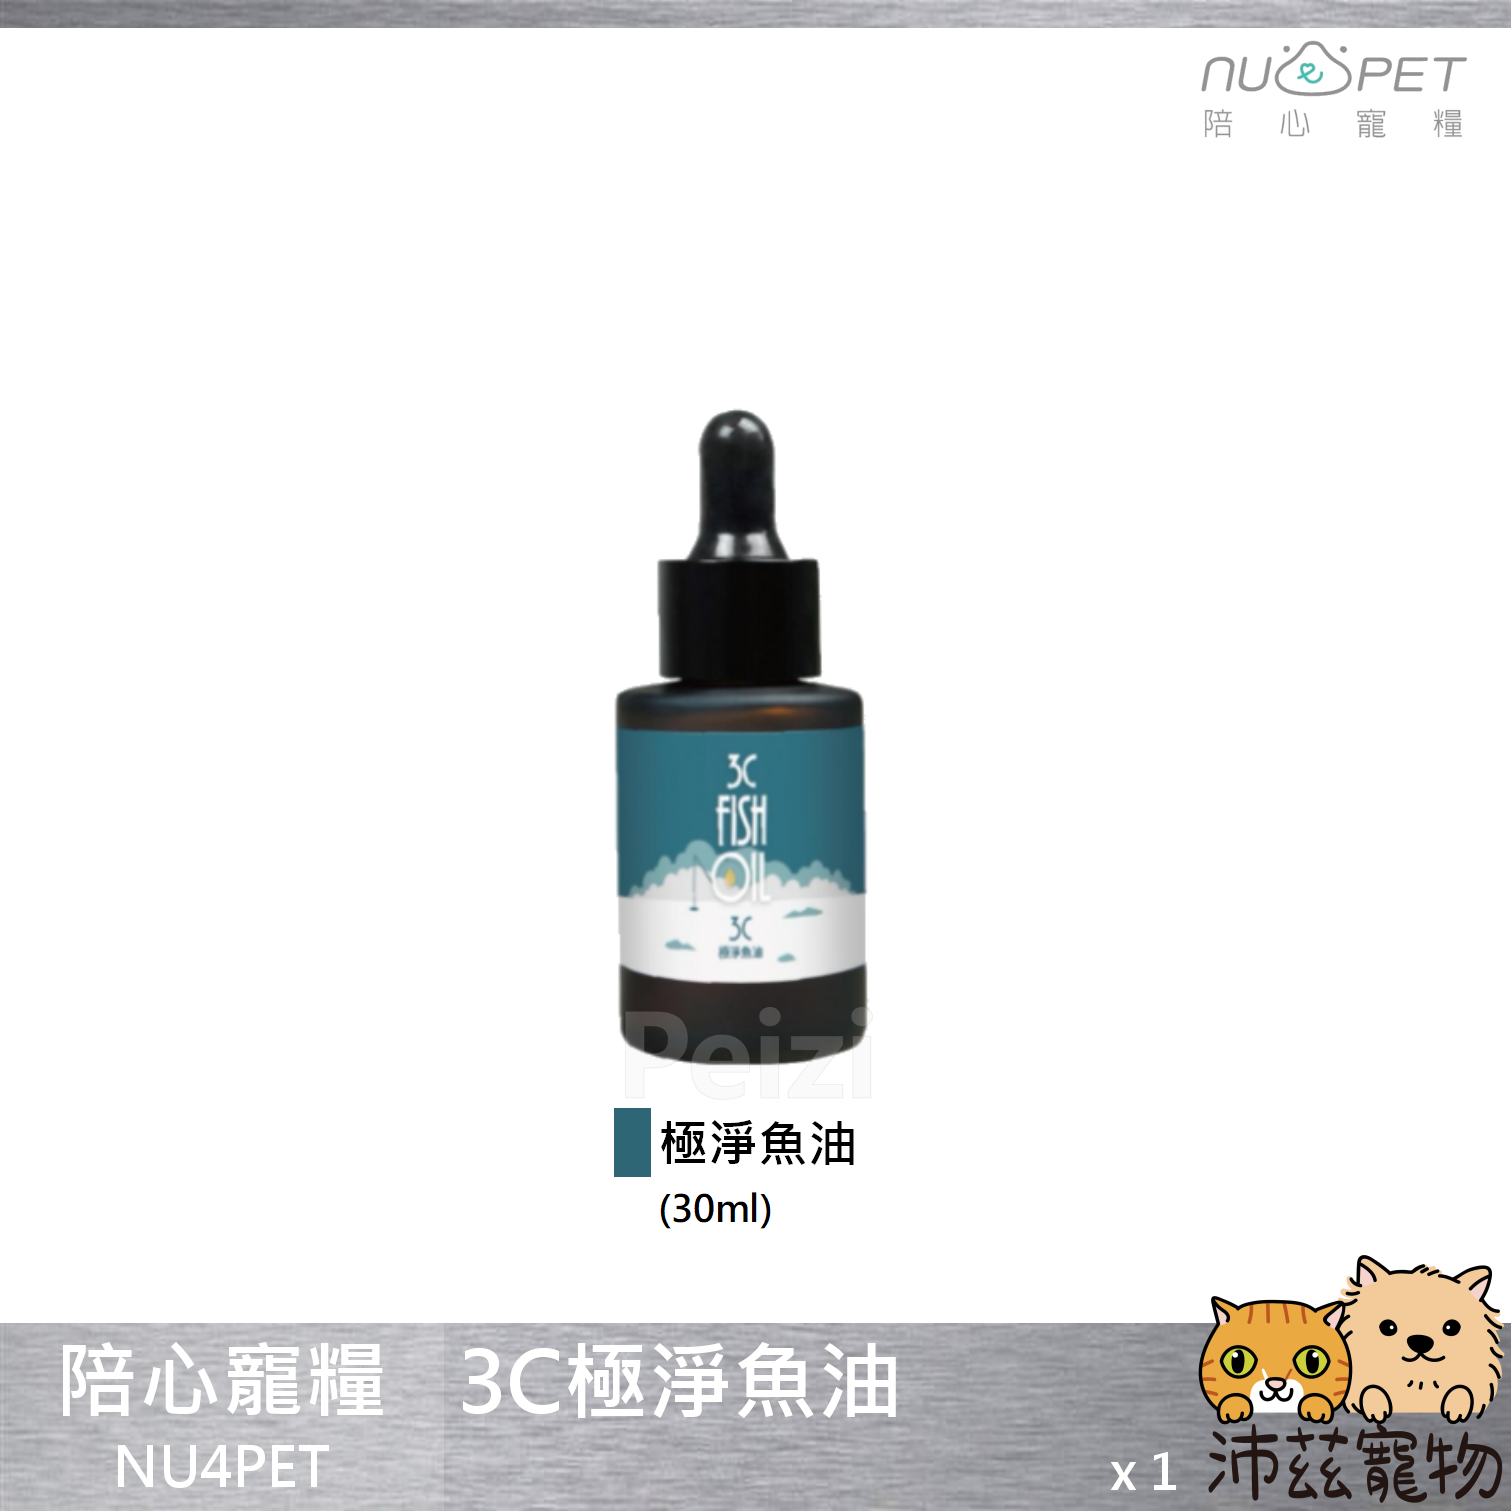 【陪心寵糧 NU4PET 3C極淨魚油】魚油 Omega-3 EPA 美國 貓 狗 保健品 30ml